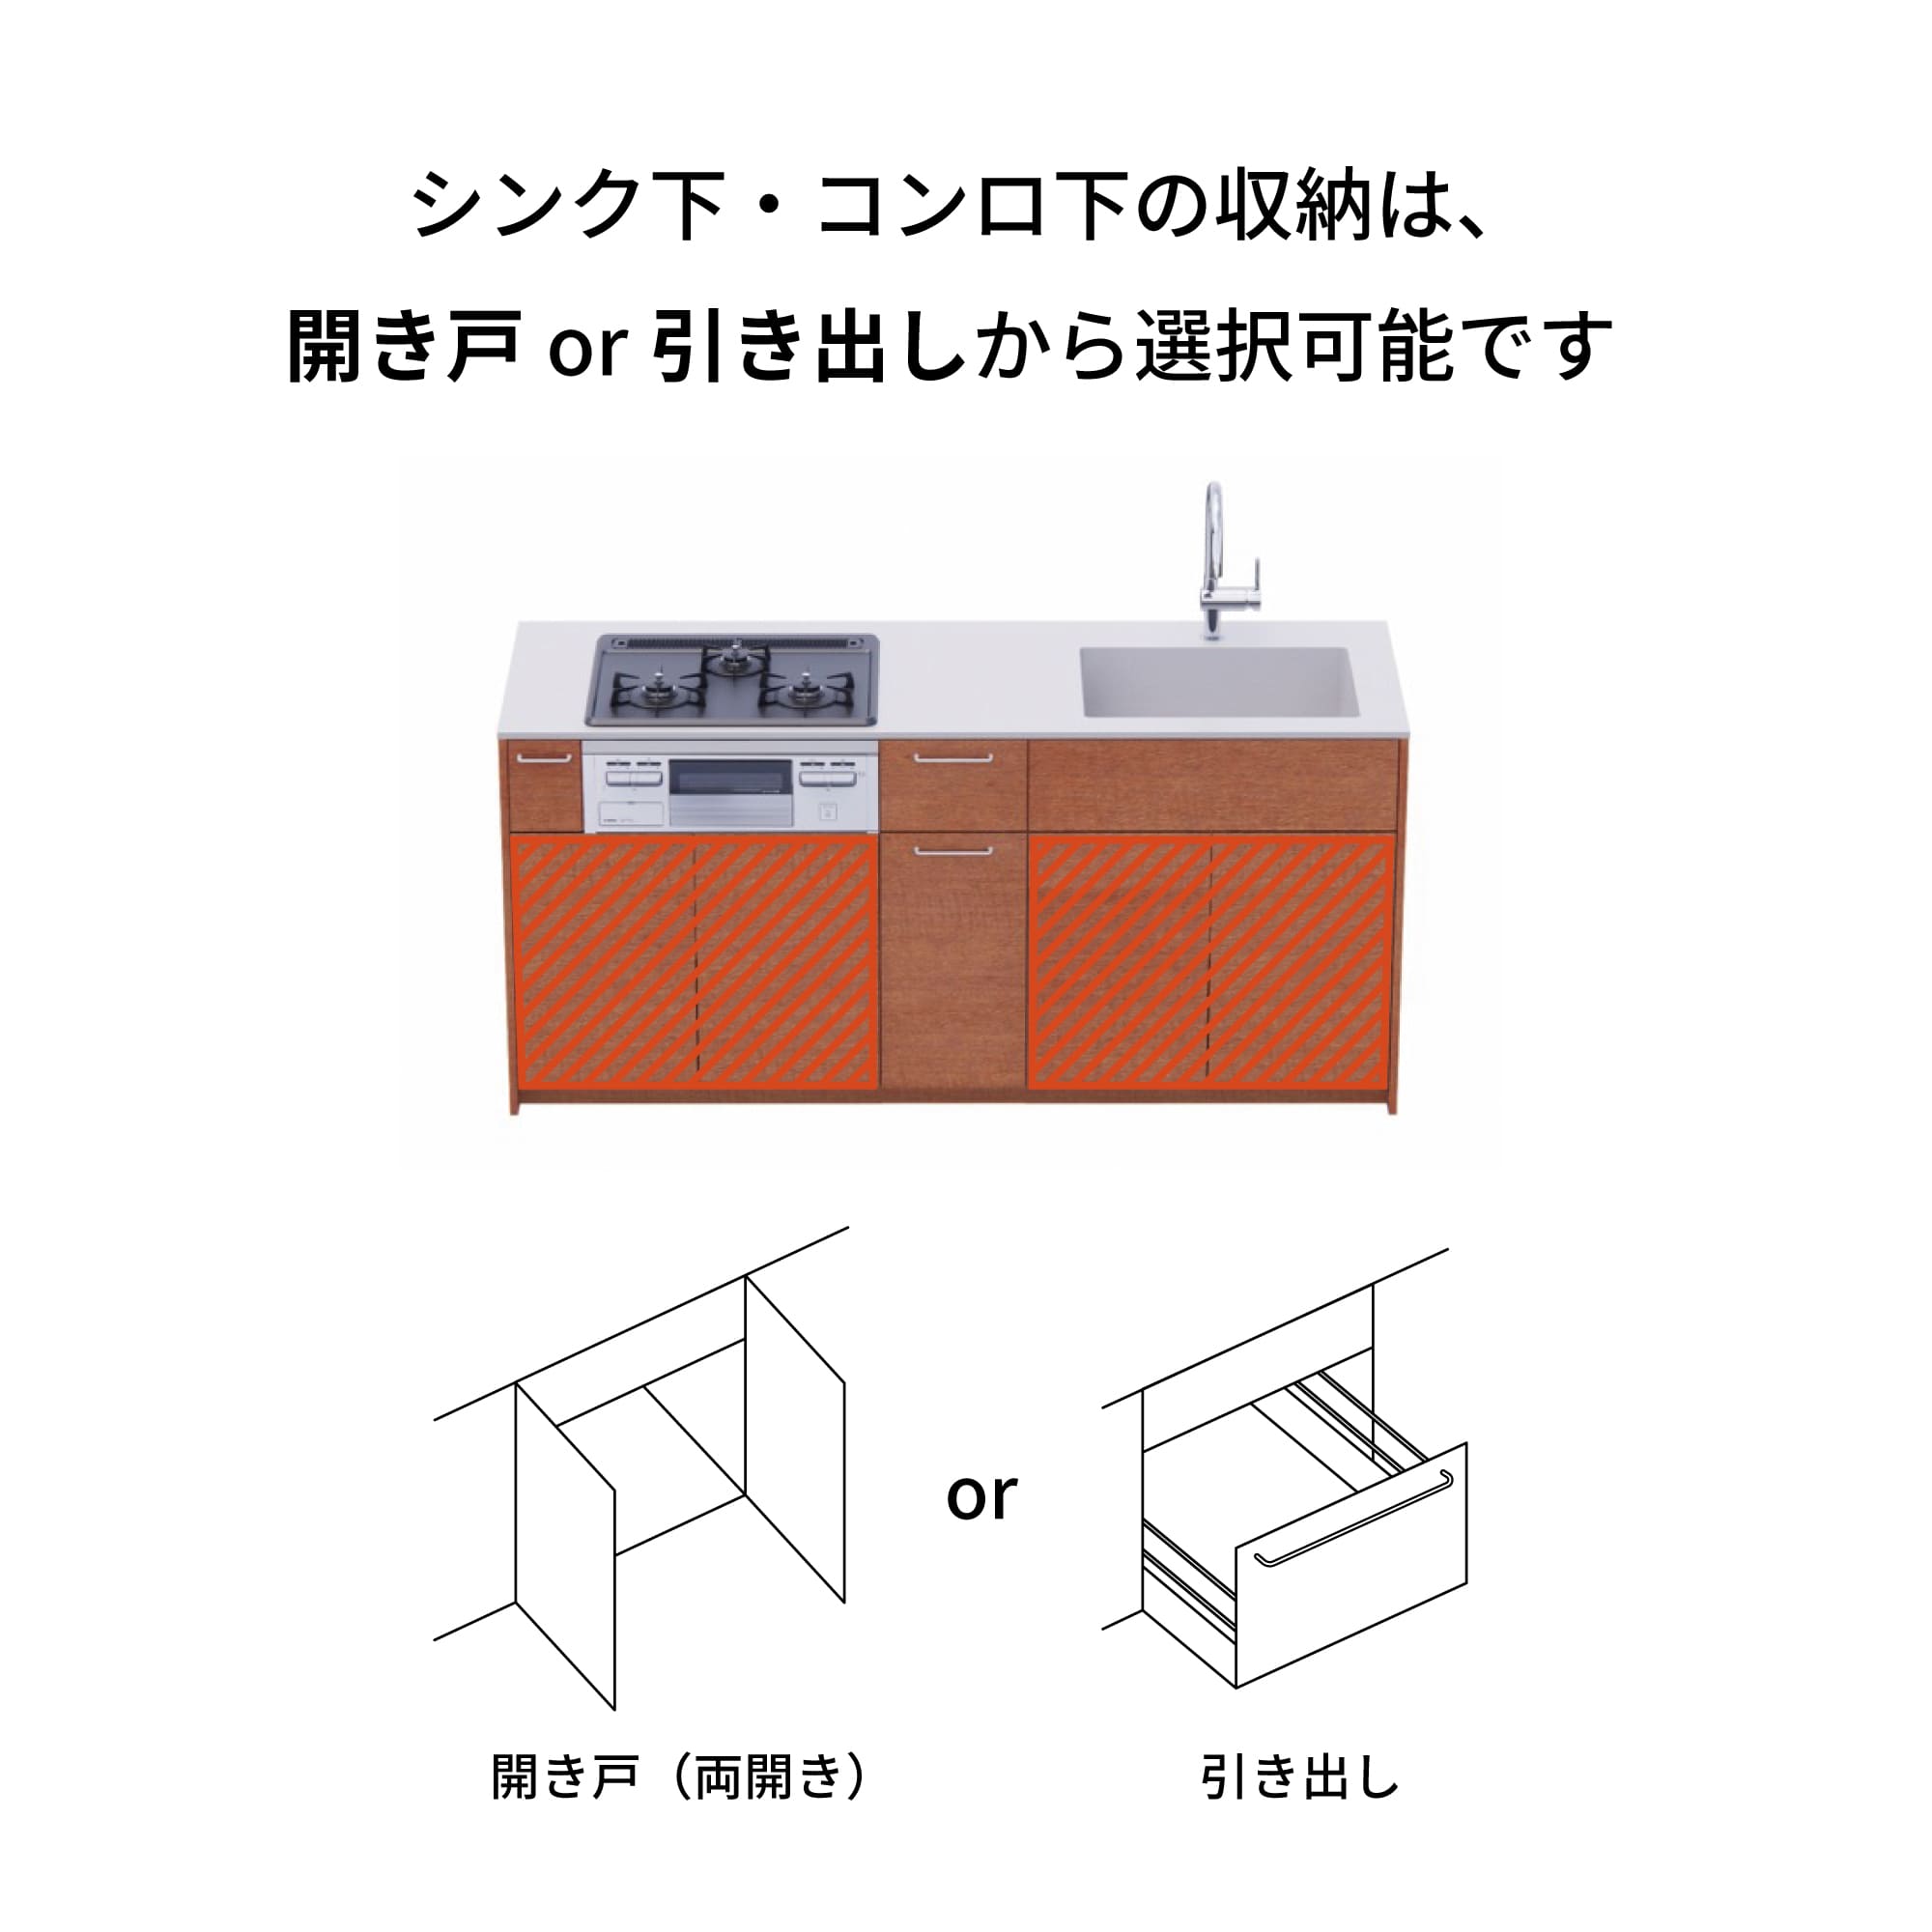 木製システムキッチン 対面型 W1990・コンロなし / オーブンなし / 食洗機あり KB-KC022-34-G183 引き出し下とコンロ下の収納が選択可能です